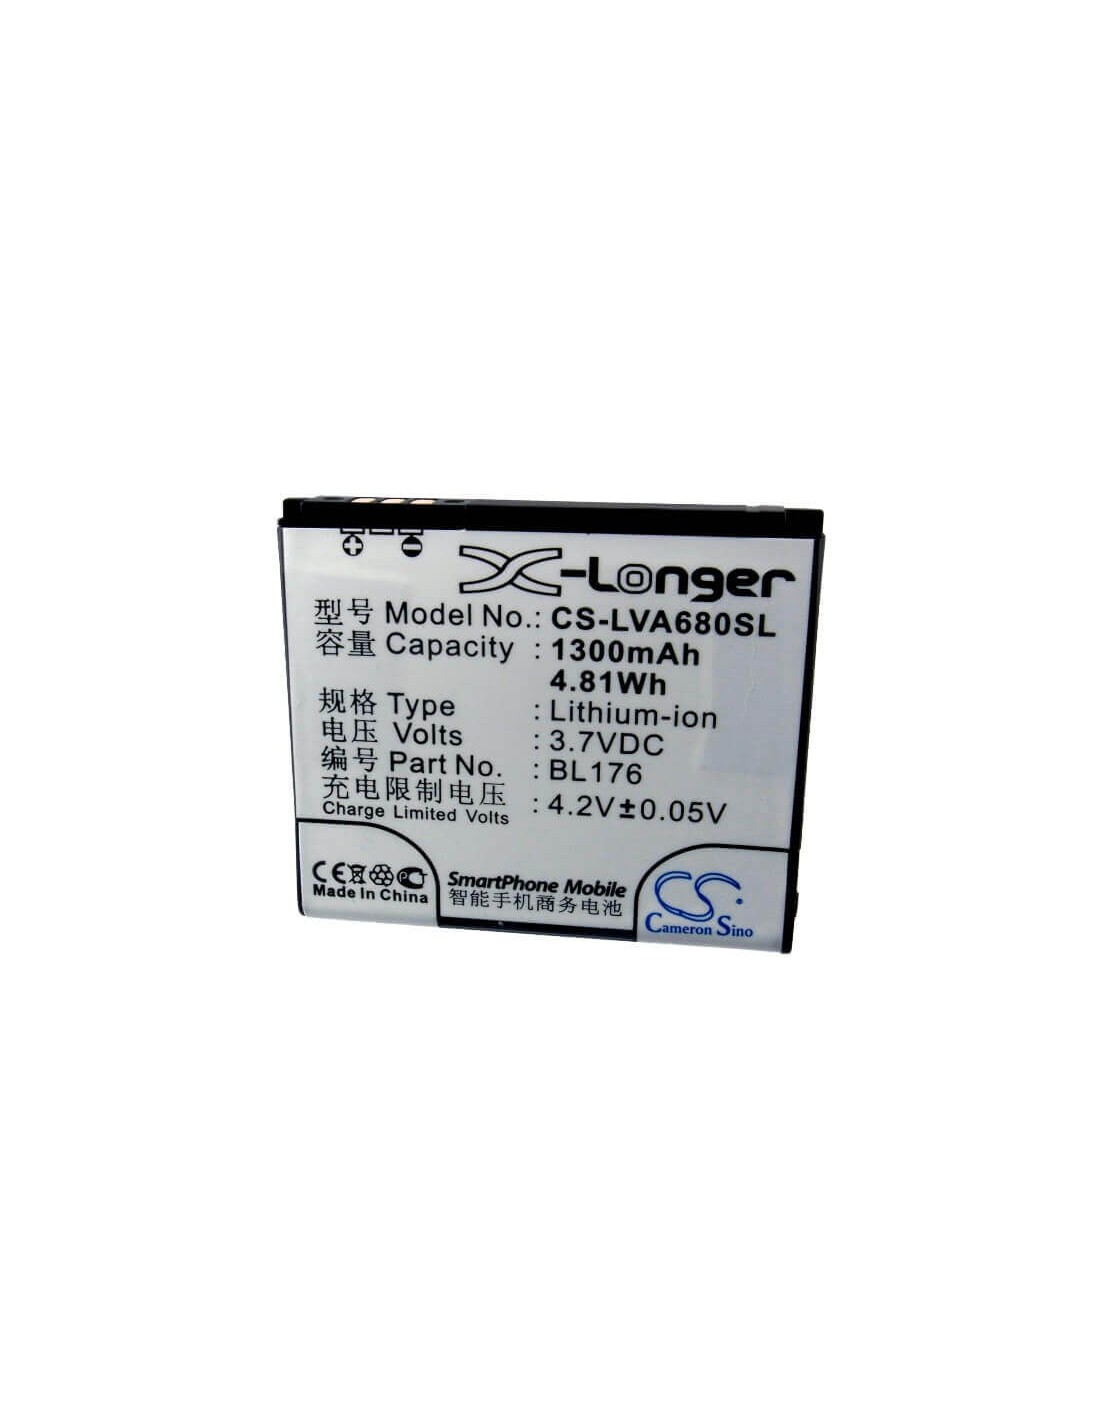 Battery for Haier HE-E899, E899 3.7V, 1300mAh - 4.81Wh